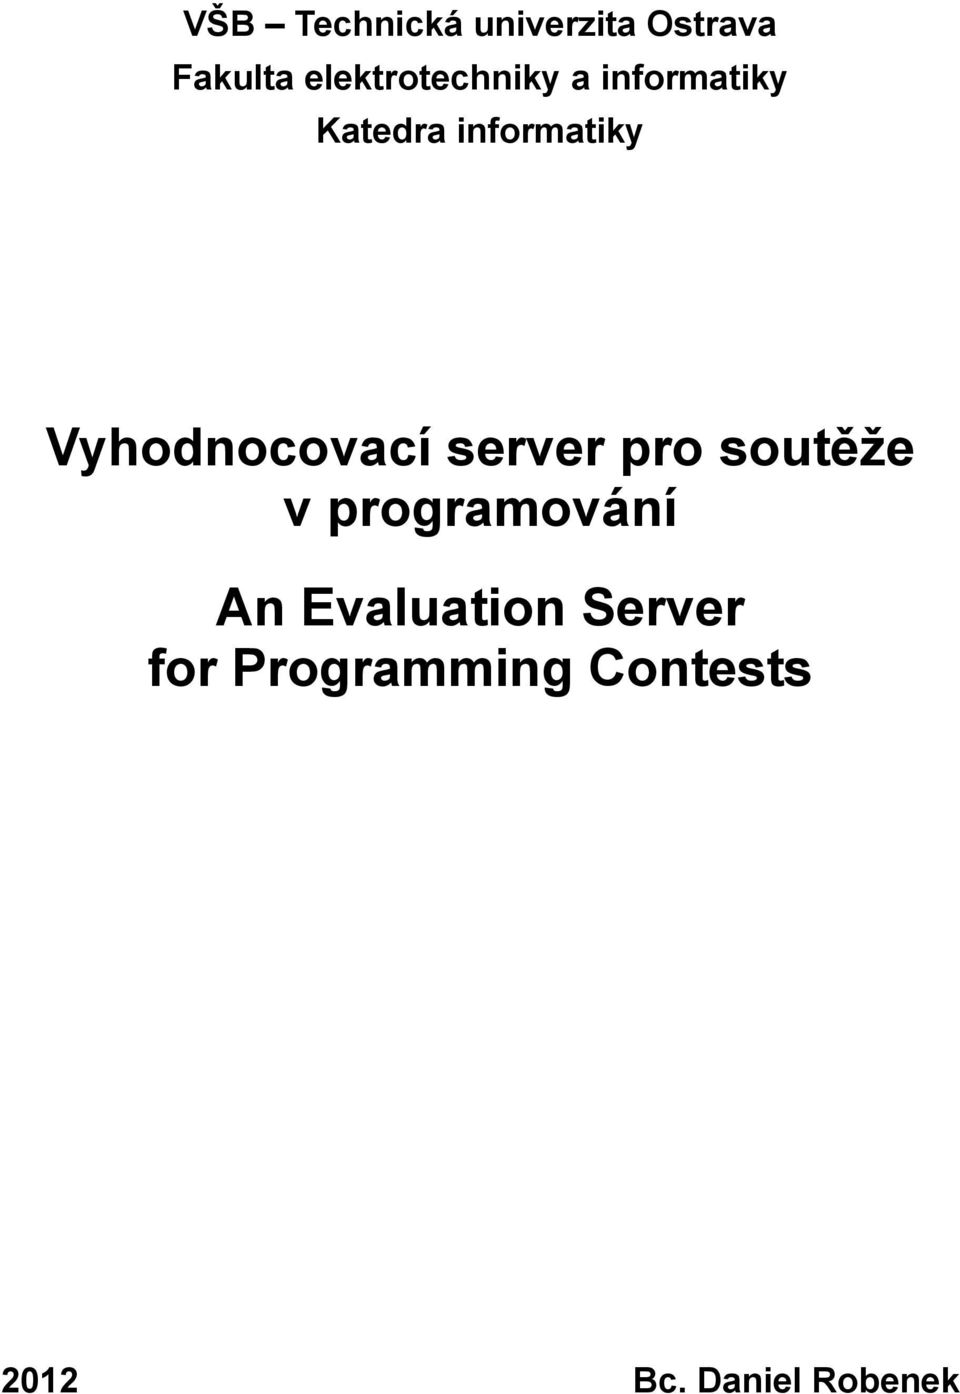 Vyhodnocovací server pro soutěže v programování An